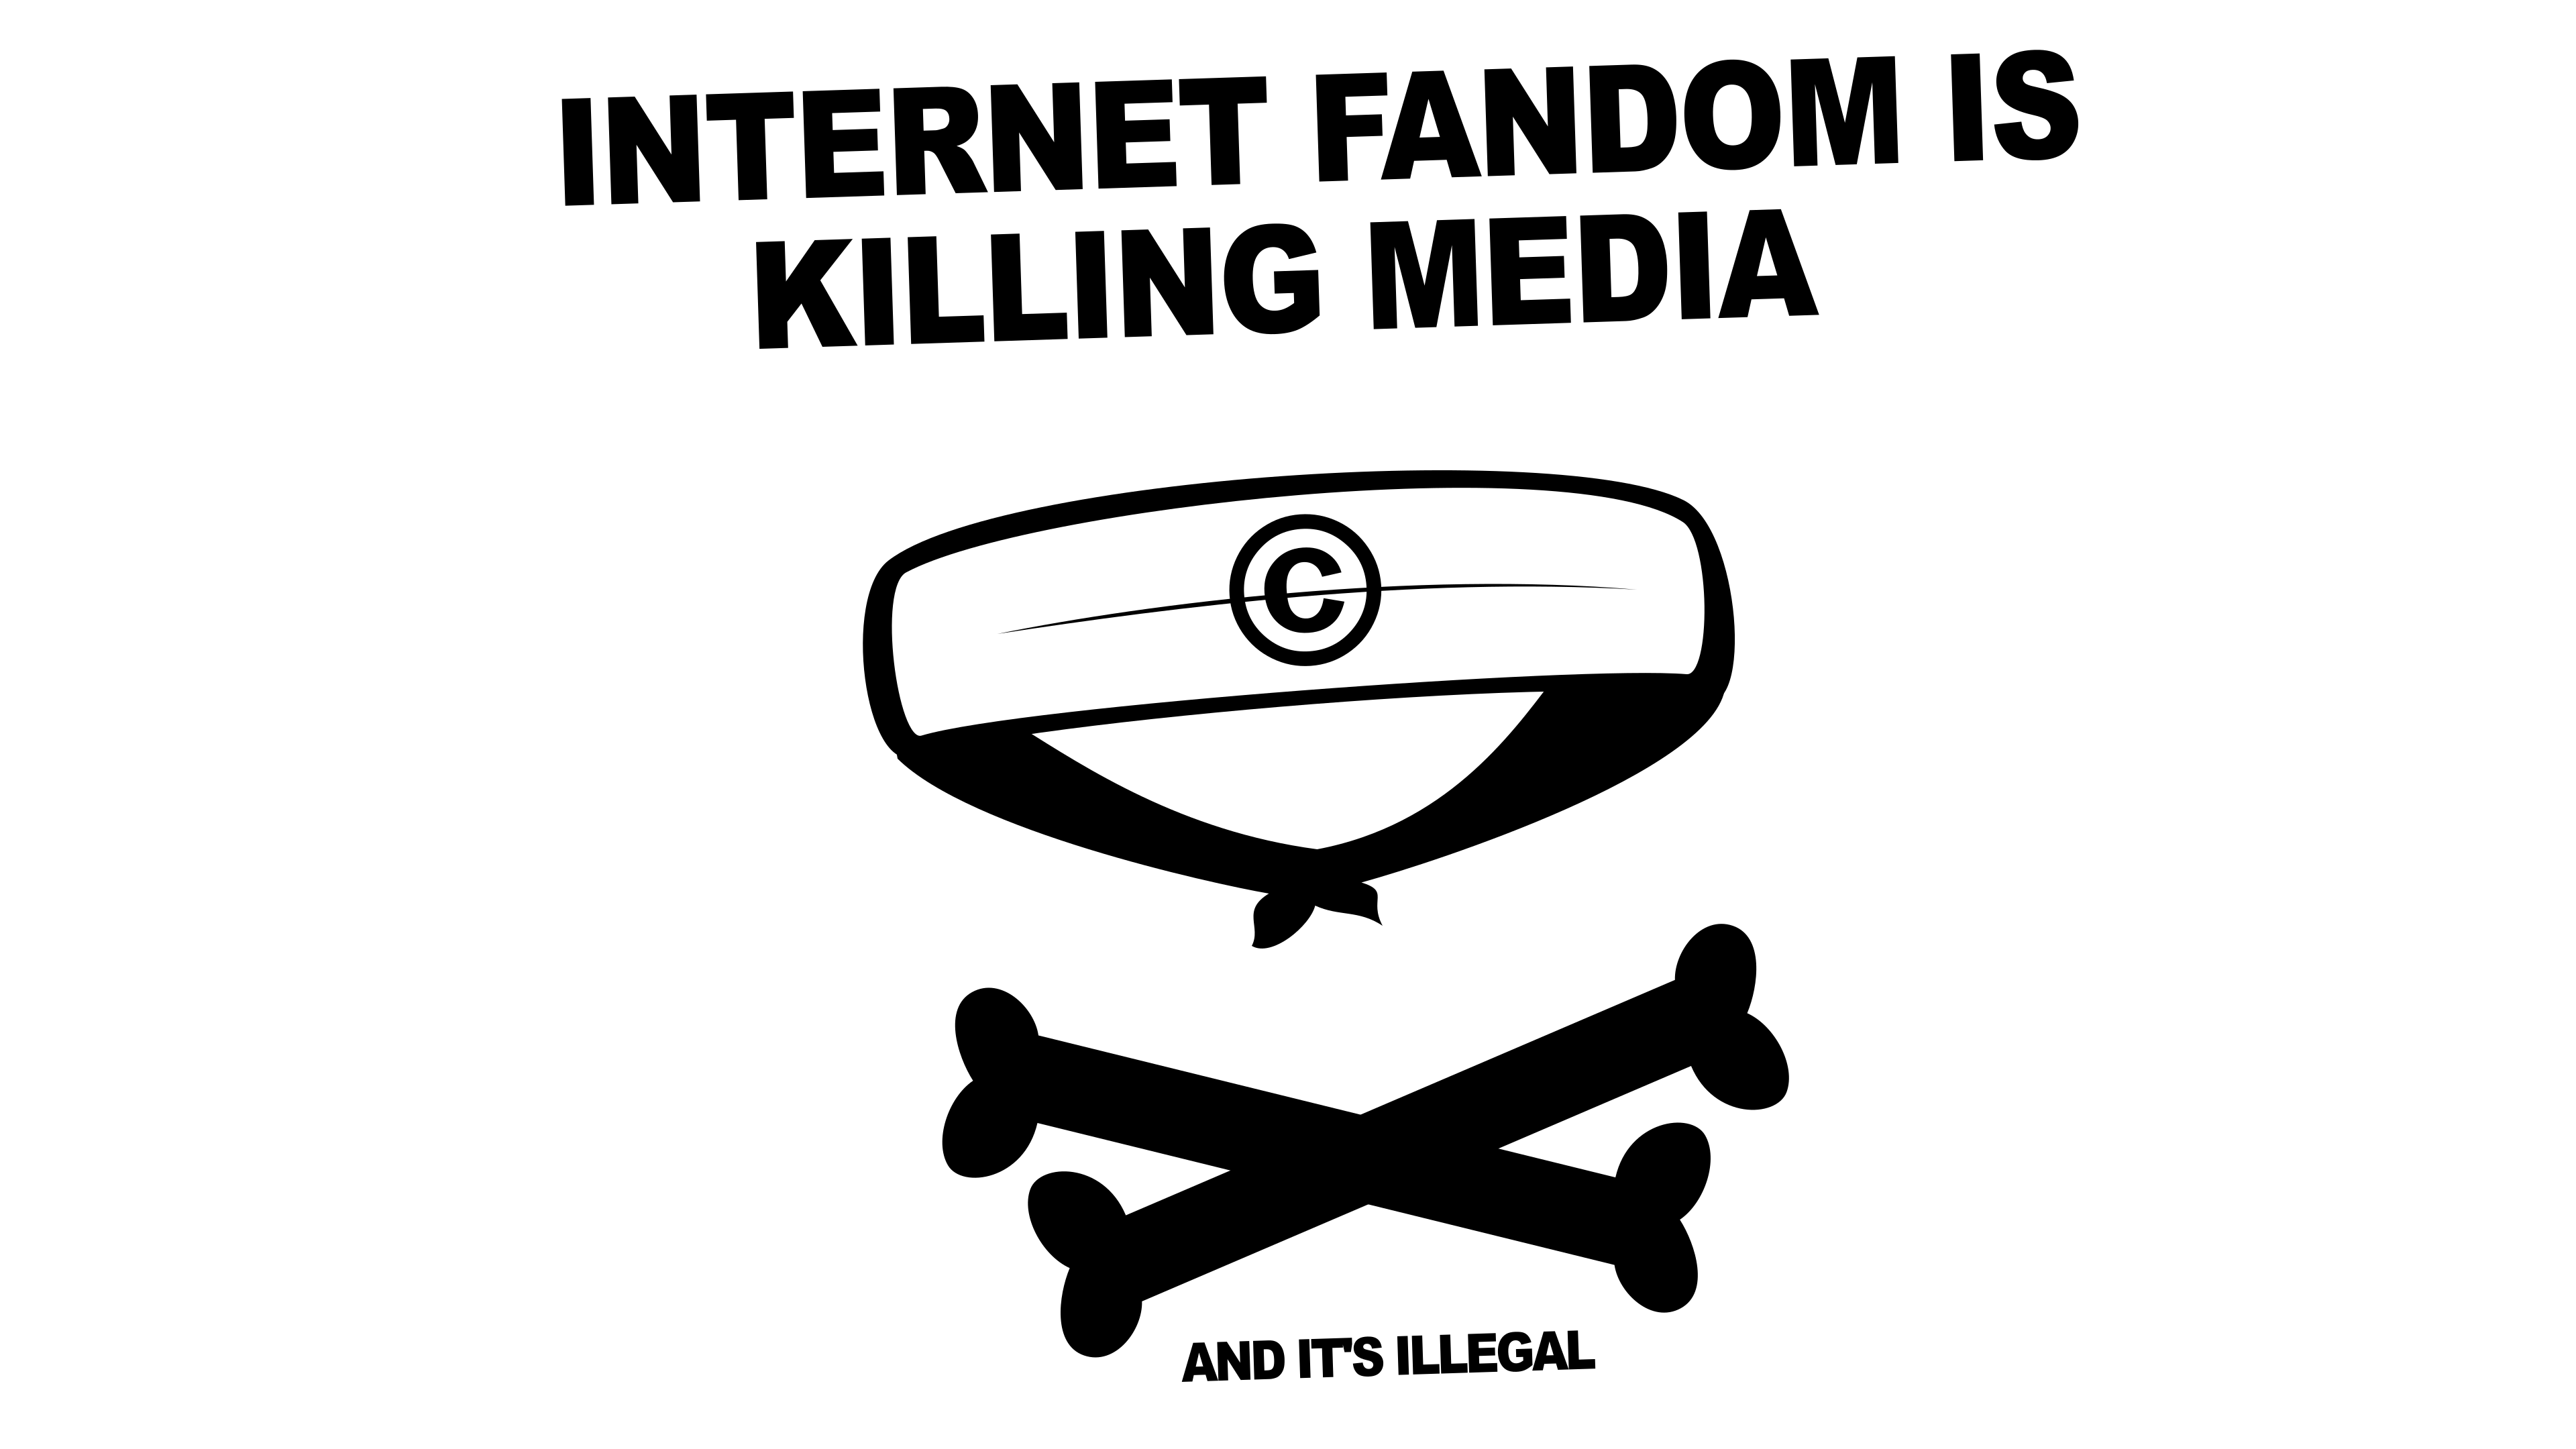 Internet Fandom is Killing Media